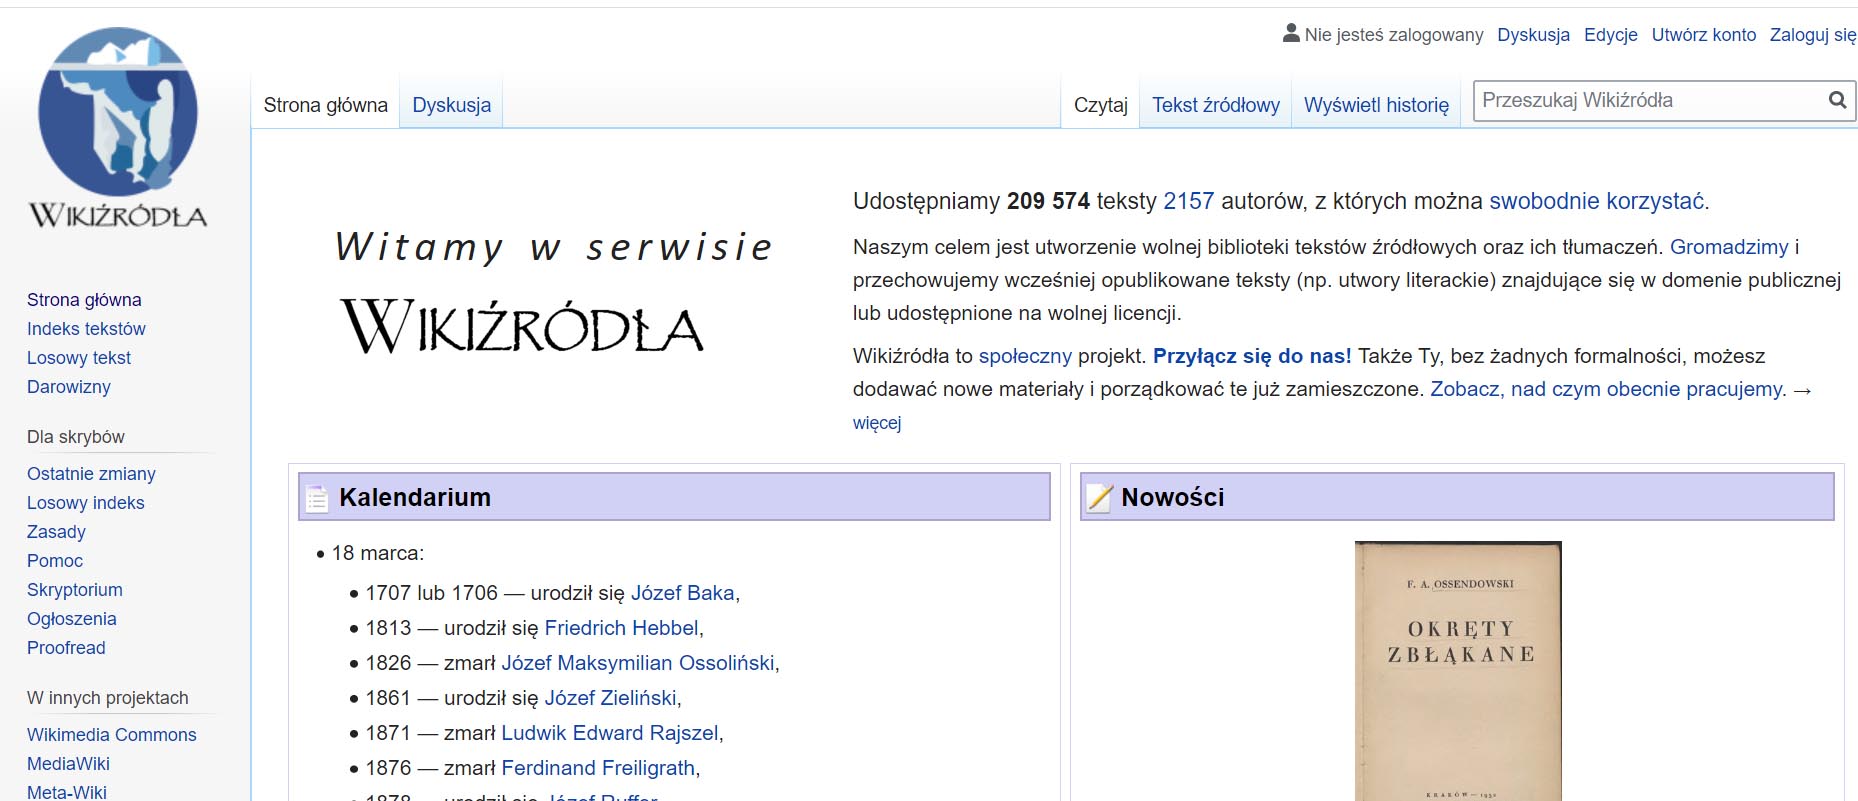 e-booki całkowicie za darmo na wikiźródla